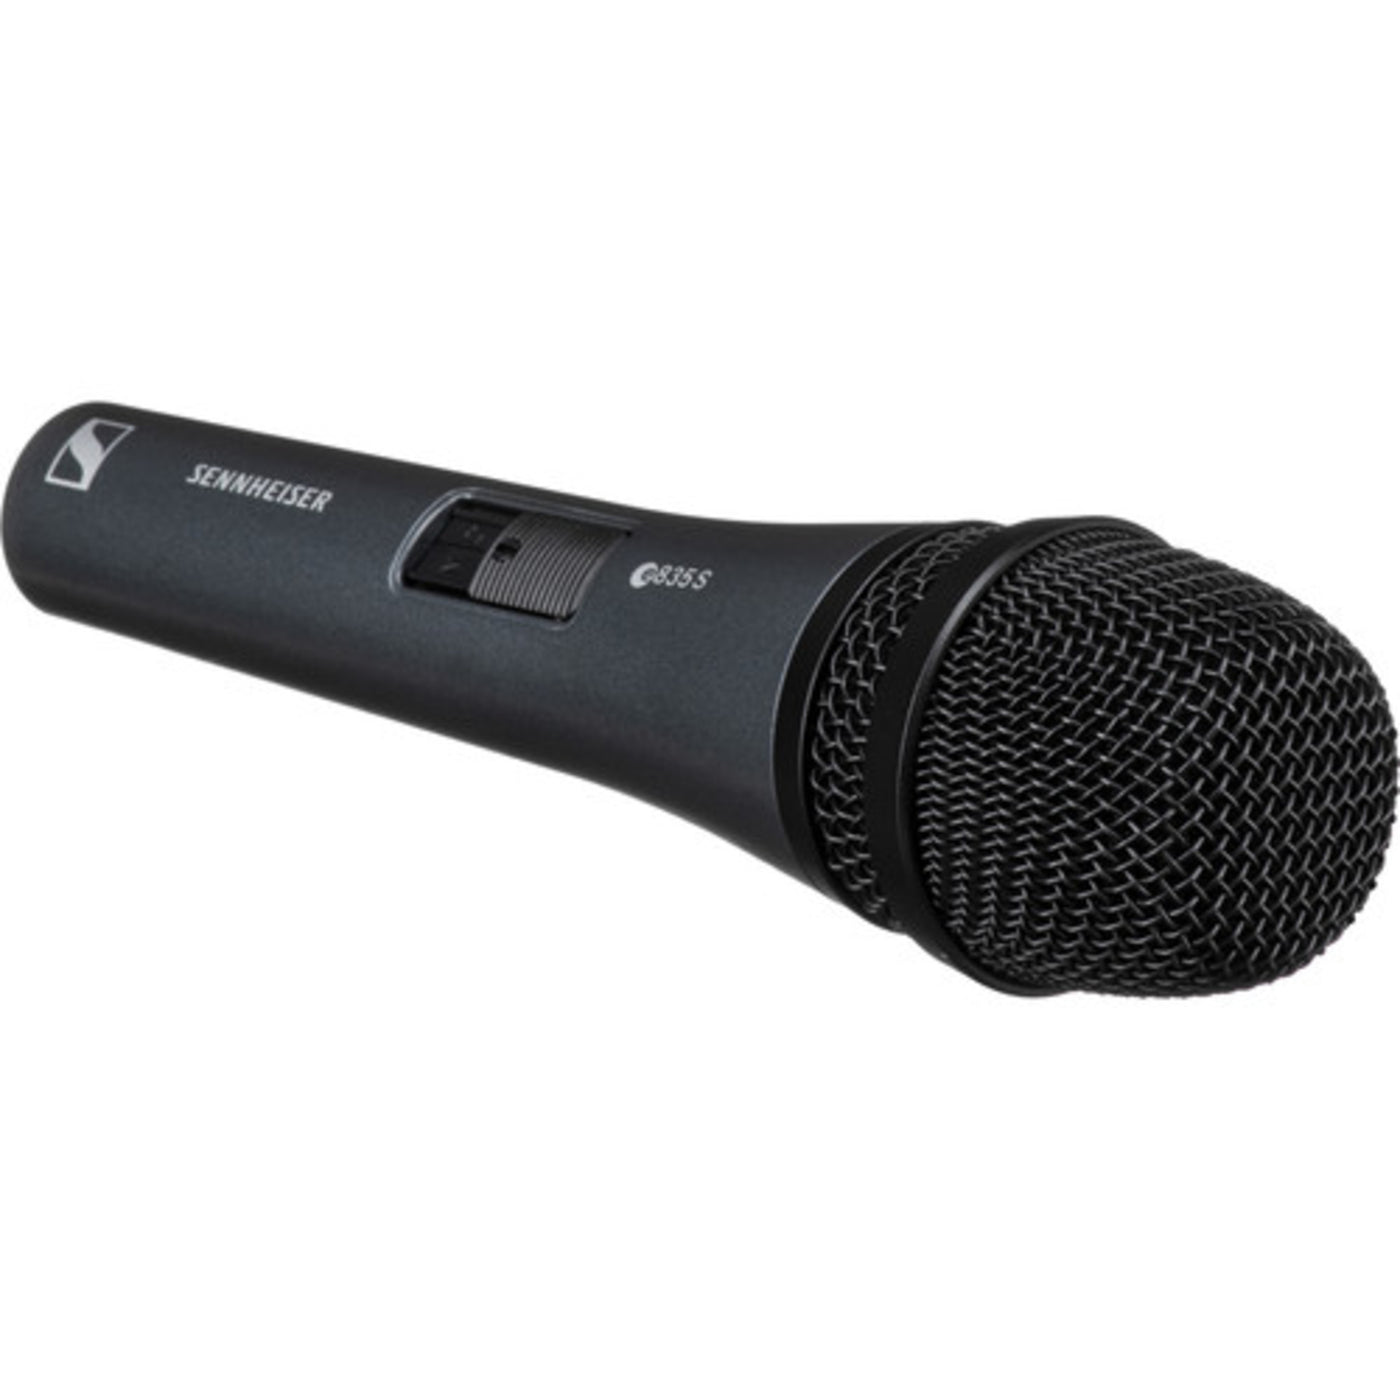 Sennheiser E 835-S Microphone